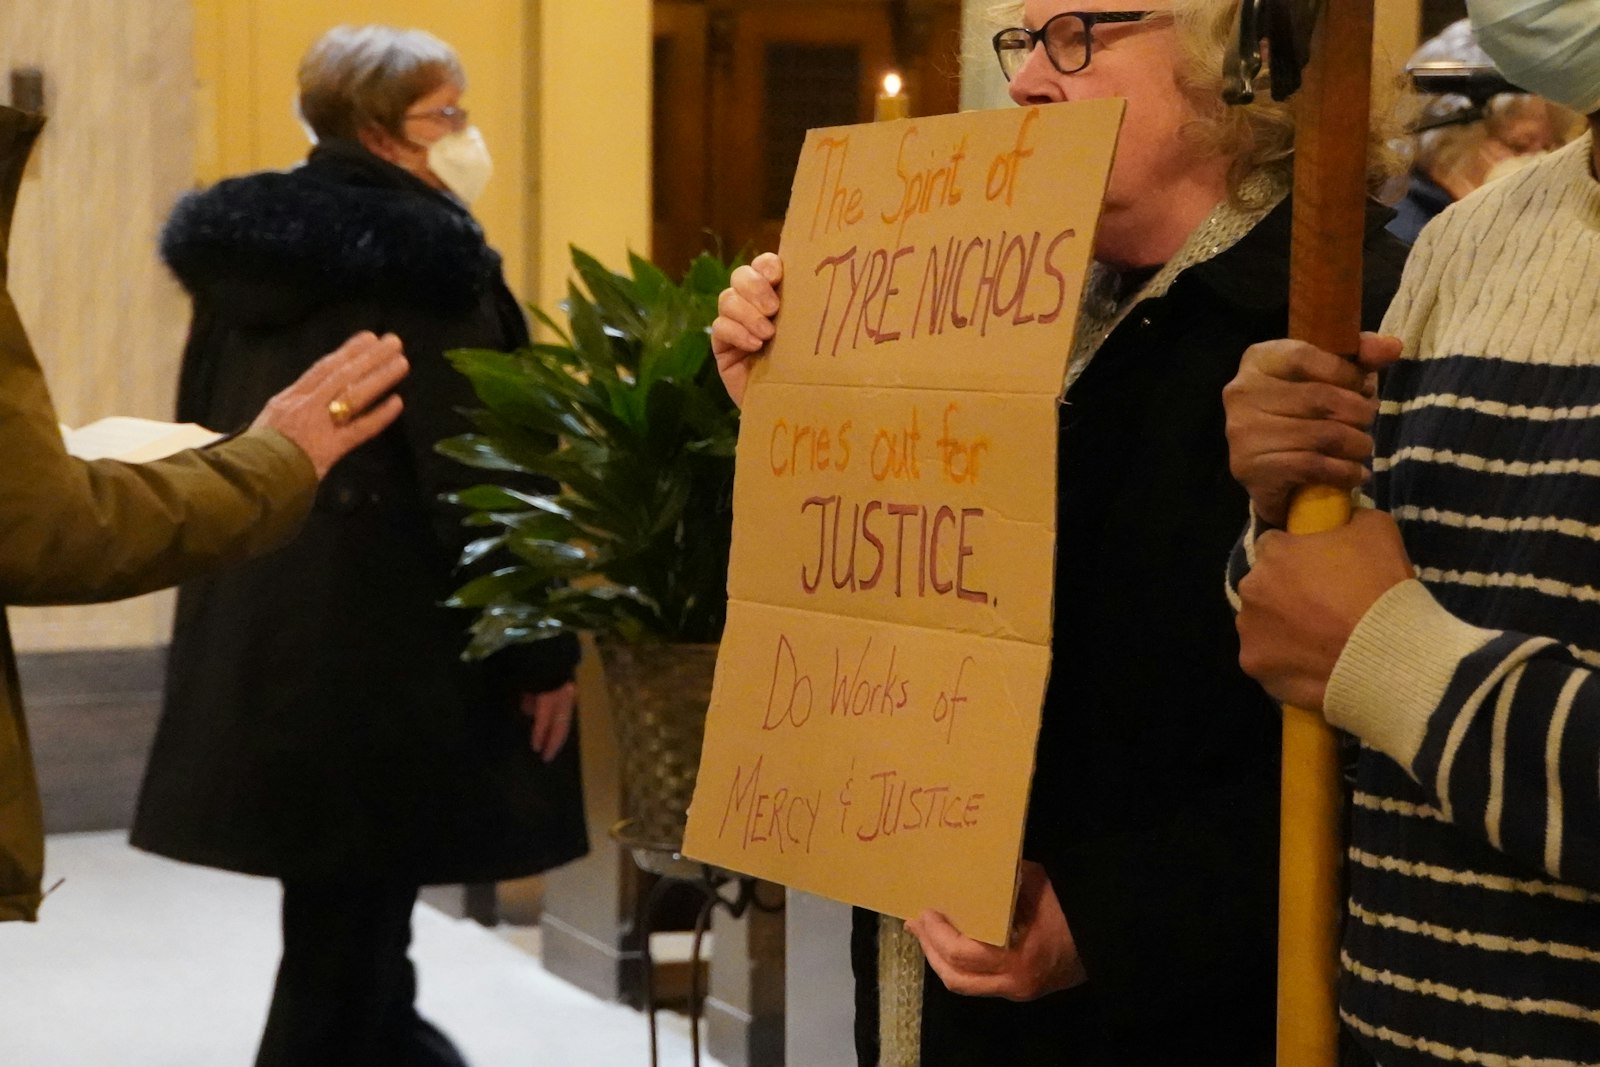 Un feligrés sostiene un cartel que dice: "El espíritu de Tire Nichols clama por justicia. Haz obras de misericordia y justicia".